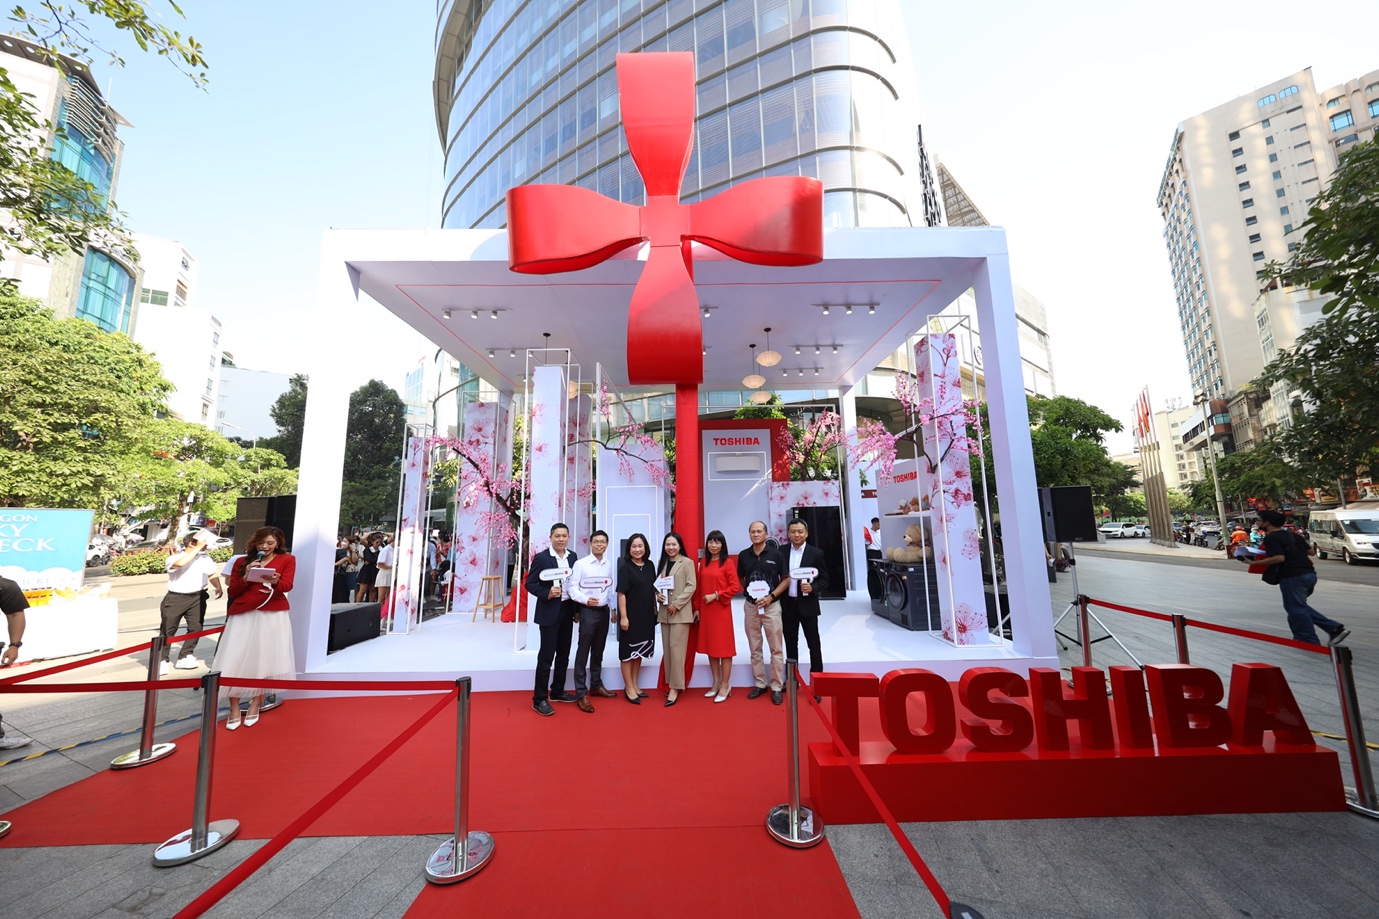 Chuyến xe "Tết Thịnh" của Toshiba không chỉ là một trải nghiệm Tết độc đáo mà còn là cơ hội để cả gia đình cùng nhau chia sẻ niềm vui của mùa lễ hội